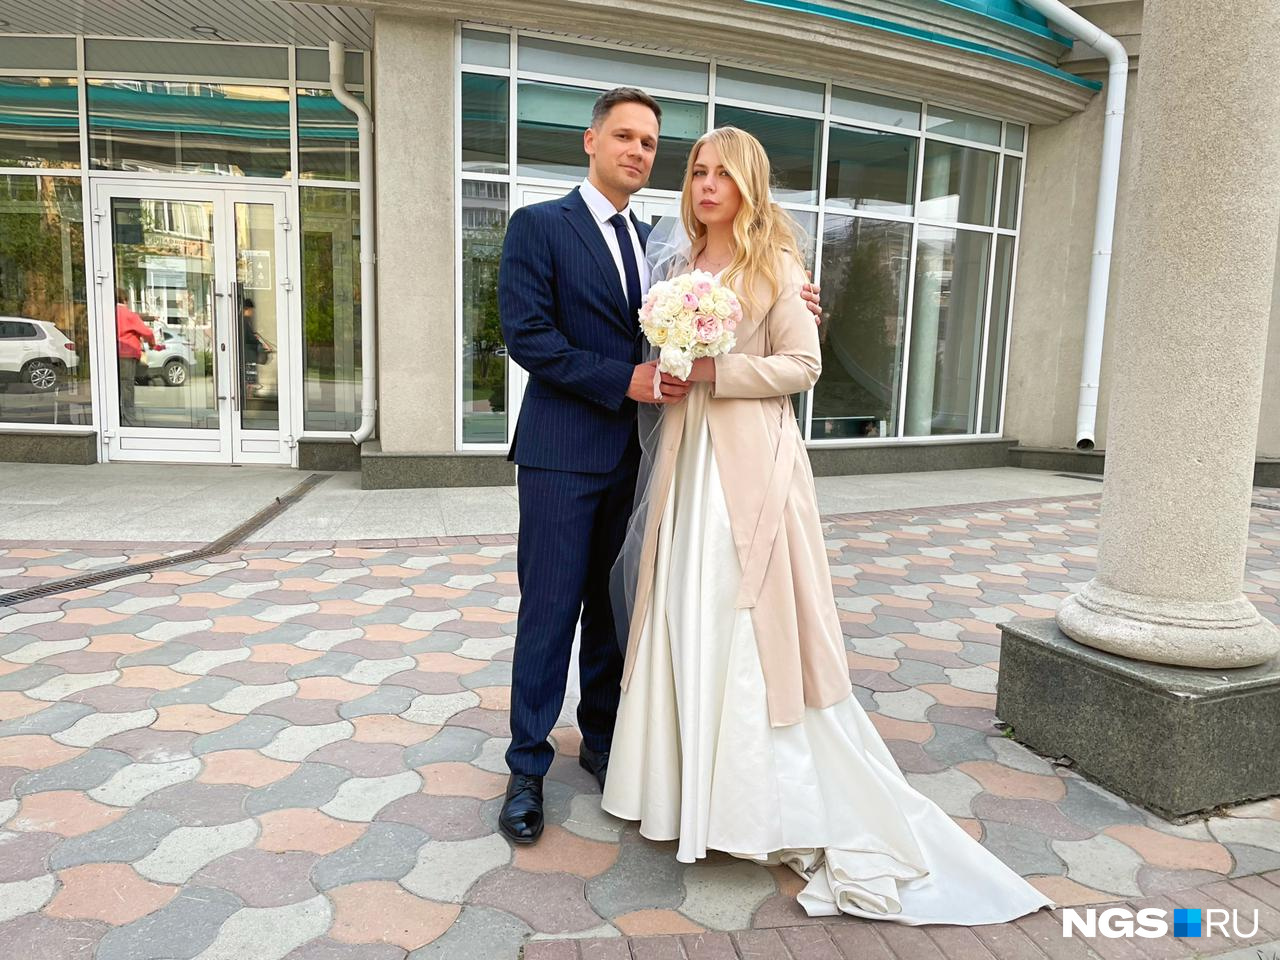 Наталья и Сергей познакомились 13-го числа, поэтому считают его счастливым